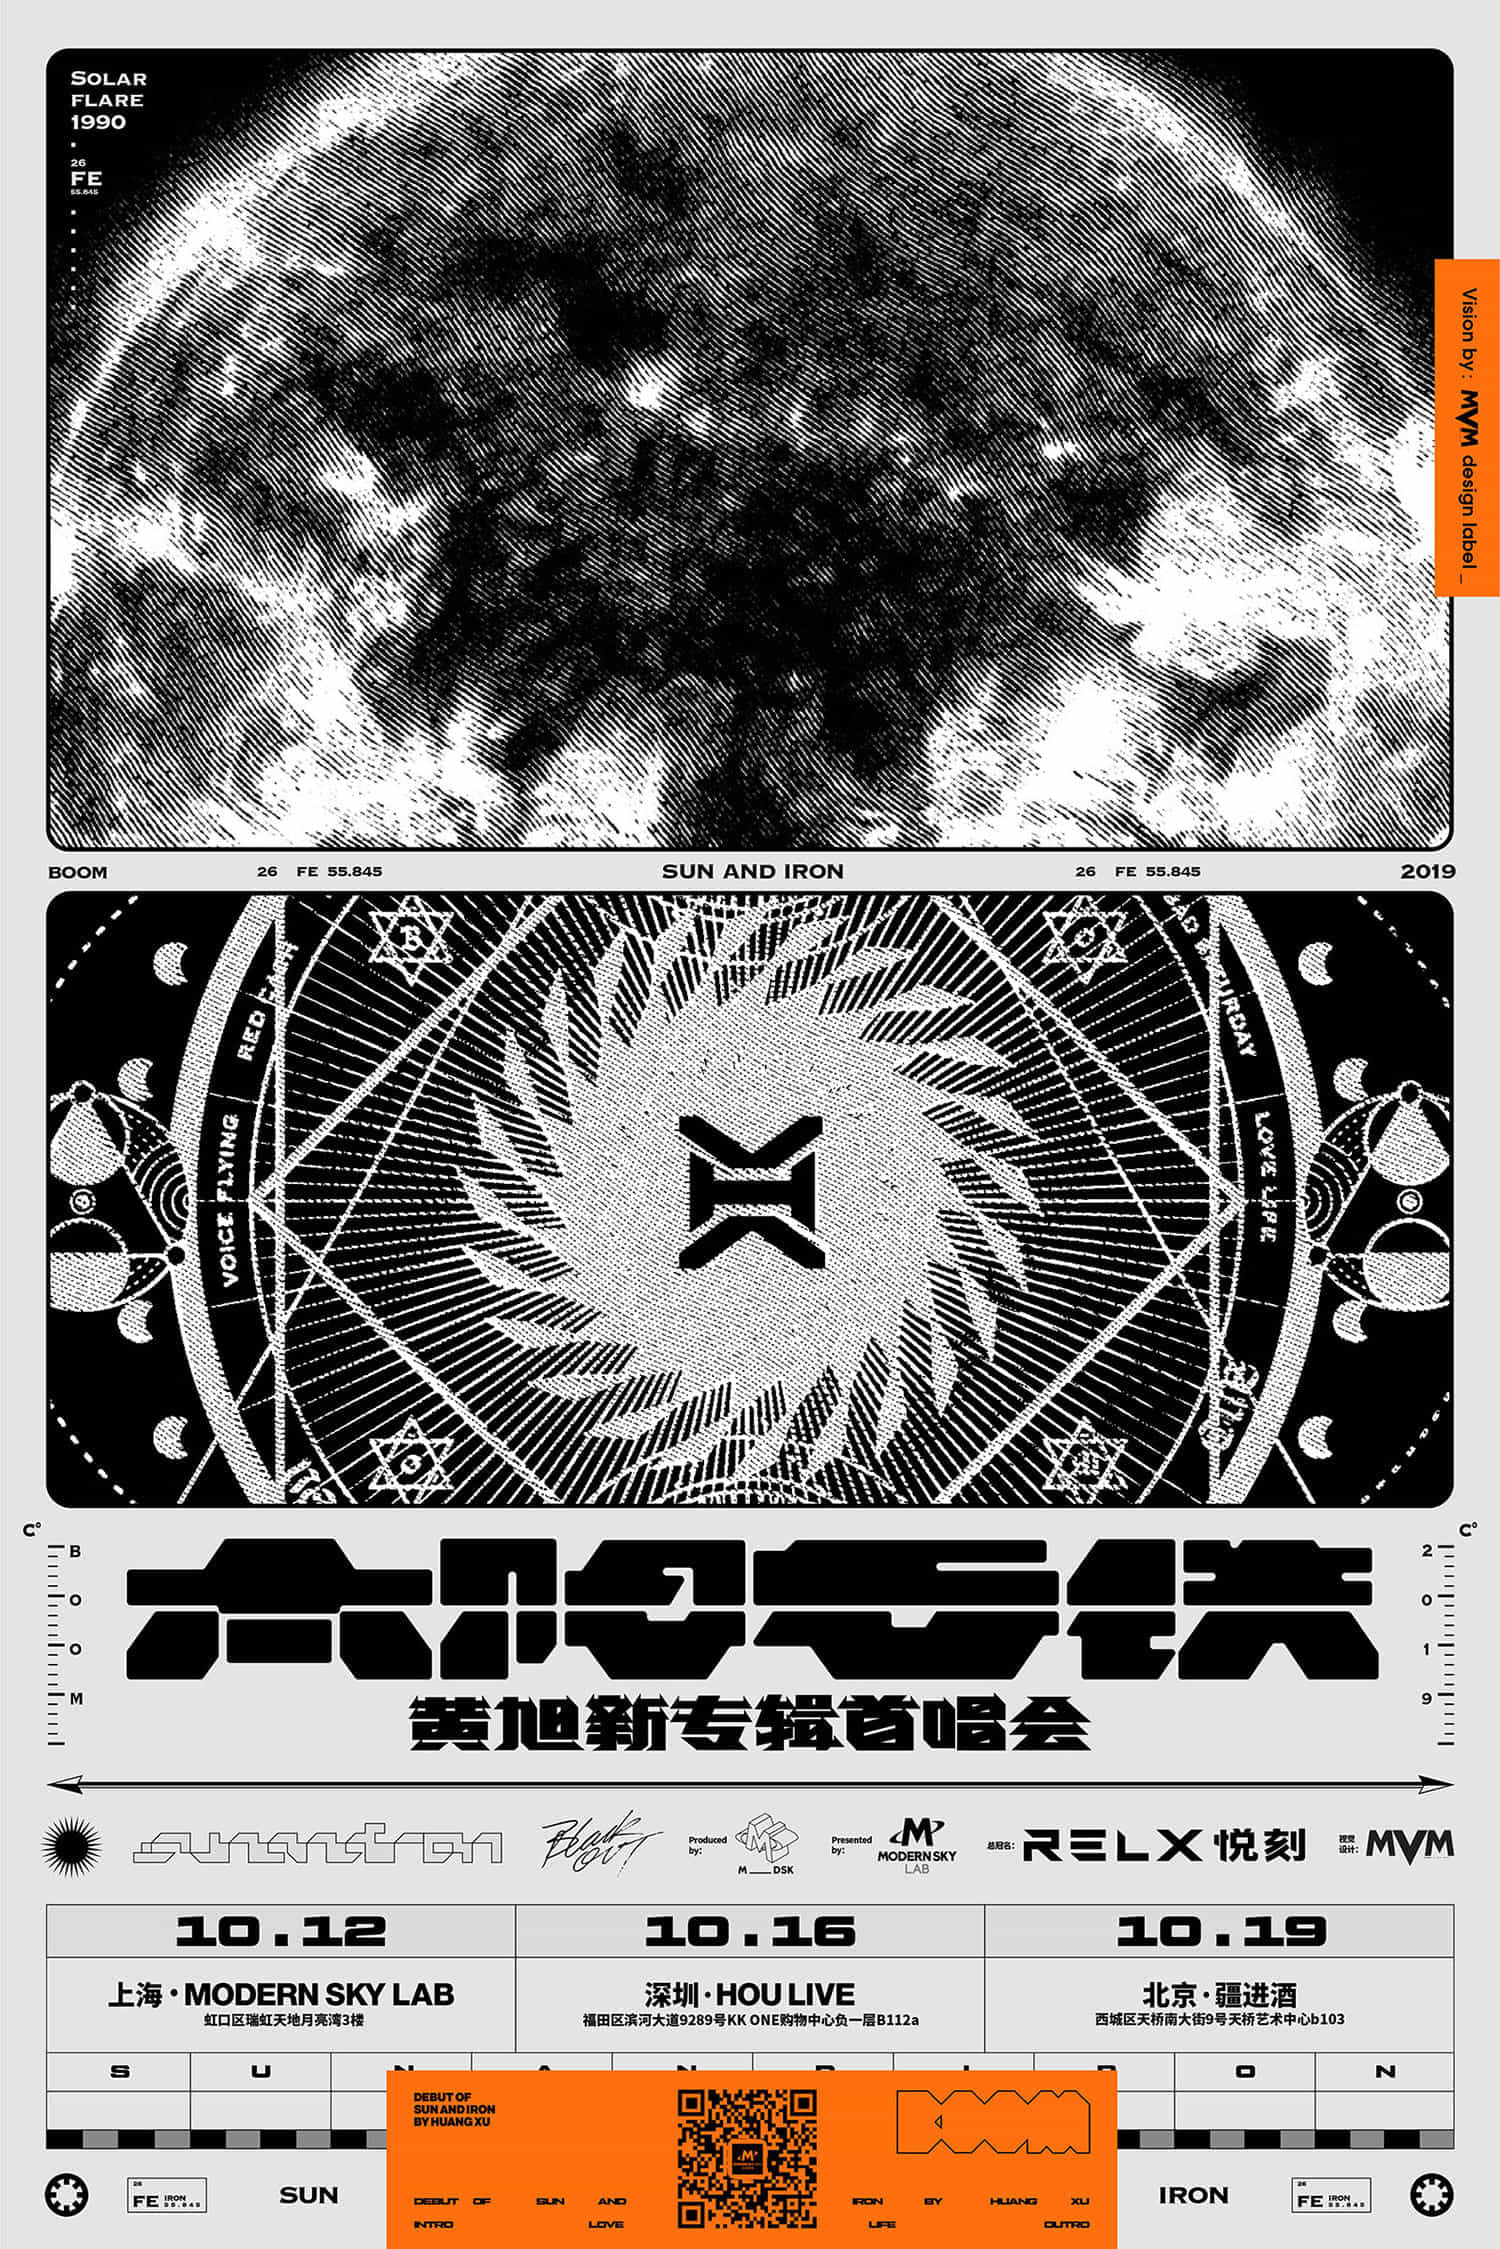 2019【太阳与铁】Sun and Iron 黄旭新专辑首唱会